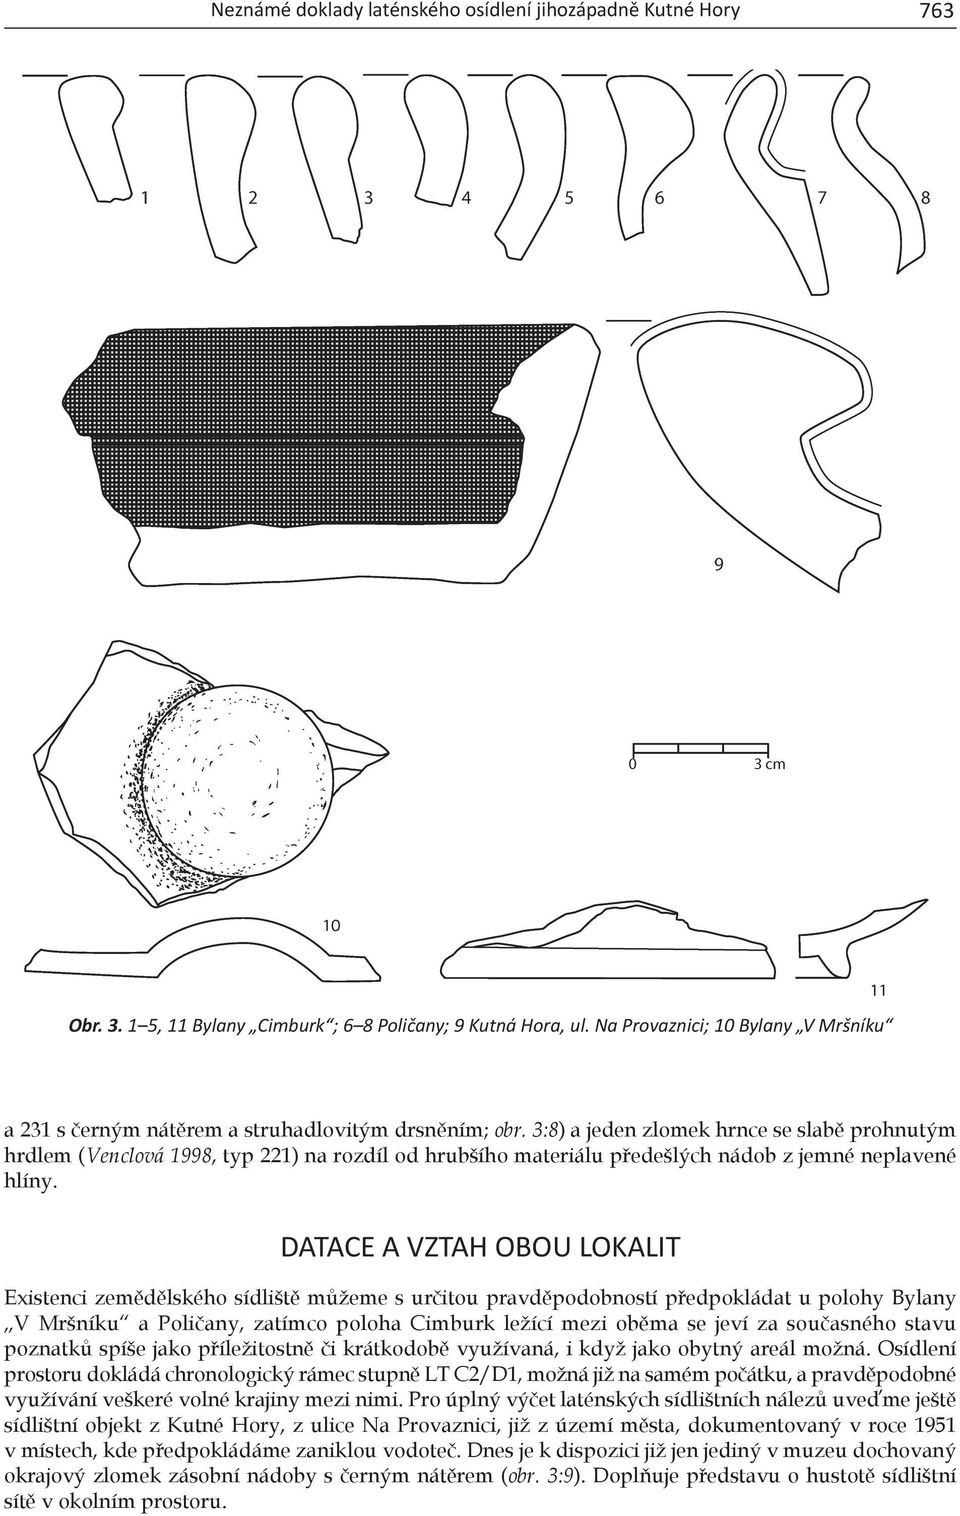 3:8) a jeden zlomek hrnce se slabě prohnutým hrdlem (Venclová 1998, typ 221) na rozdíl od hrubšího materiálu předešlých nádob z jemné neplavené hlíny.